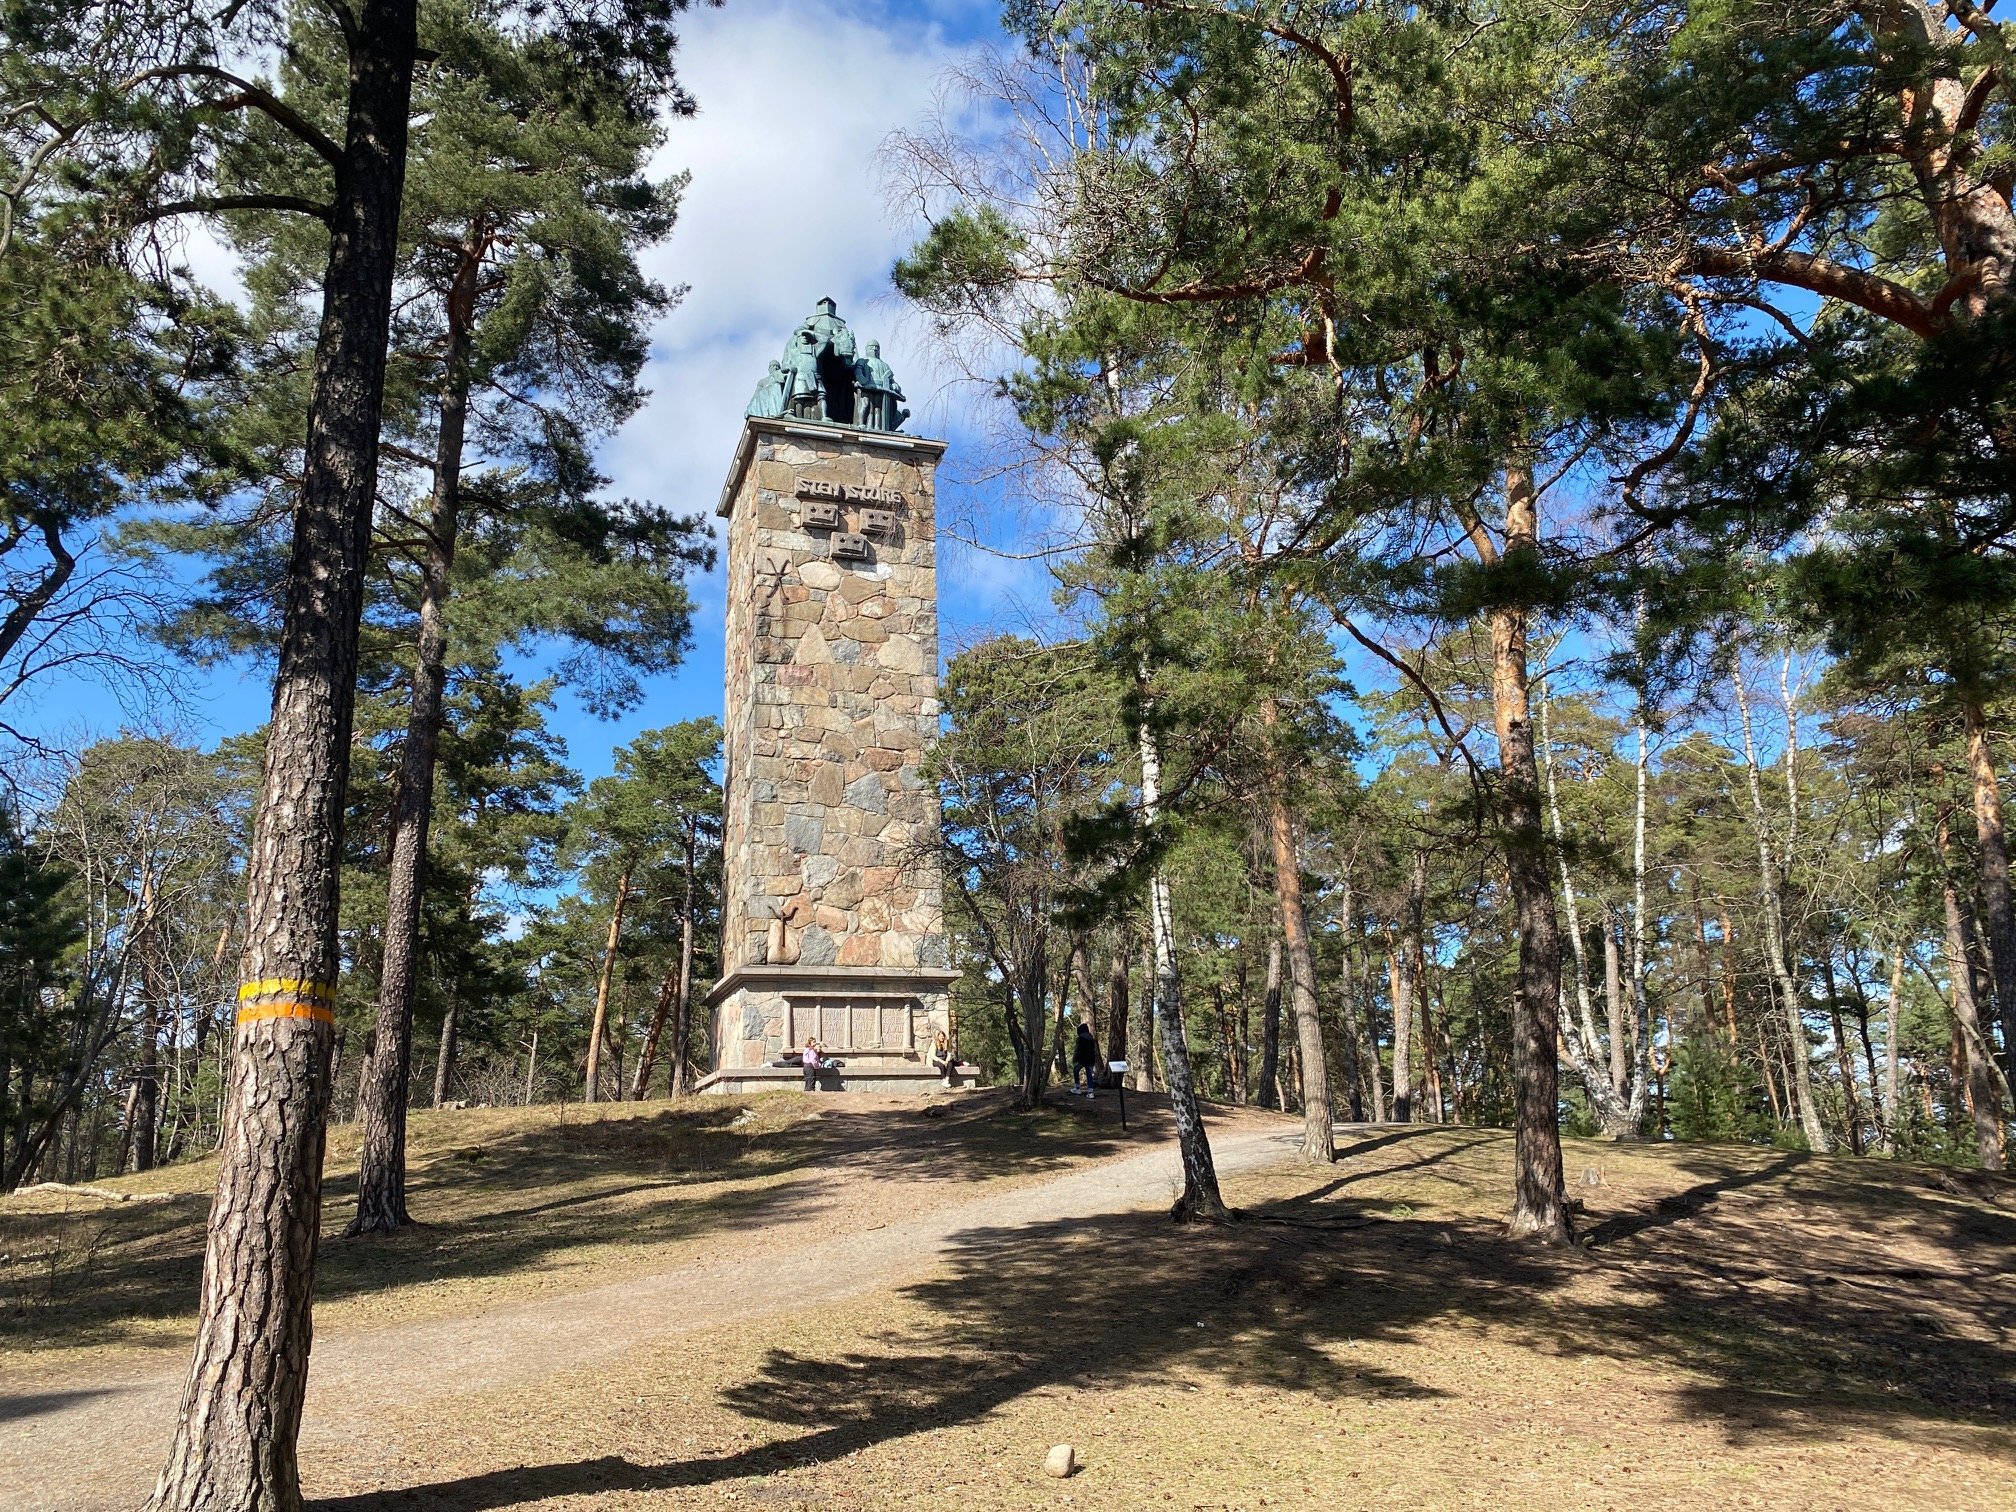 I en skog står ett högt torn av sten med en skulptur på toppen. På ena trädet finns en orange markering.